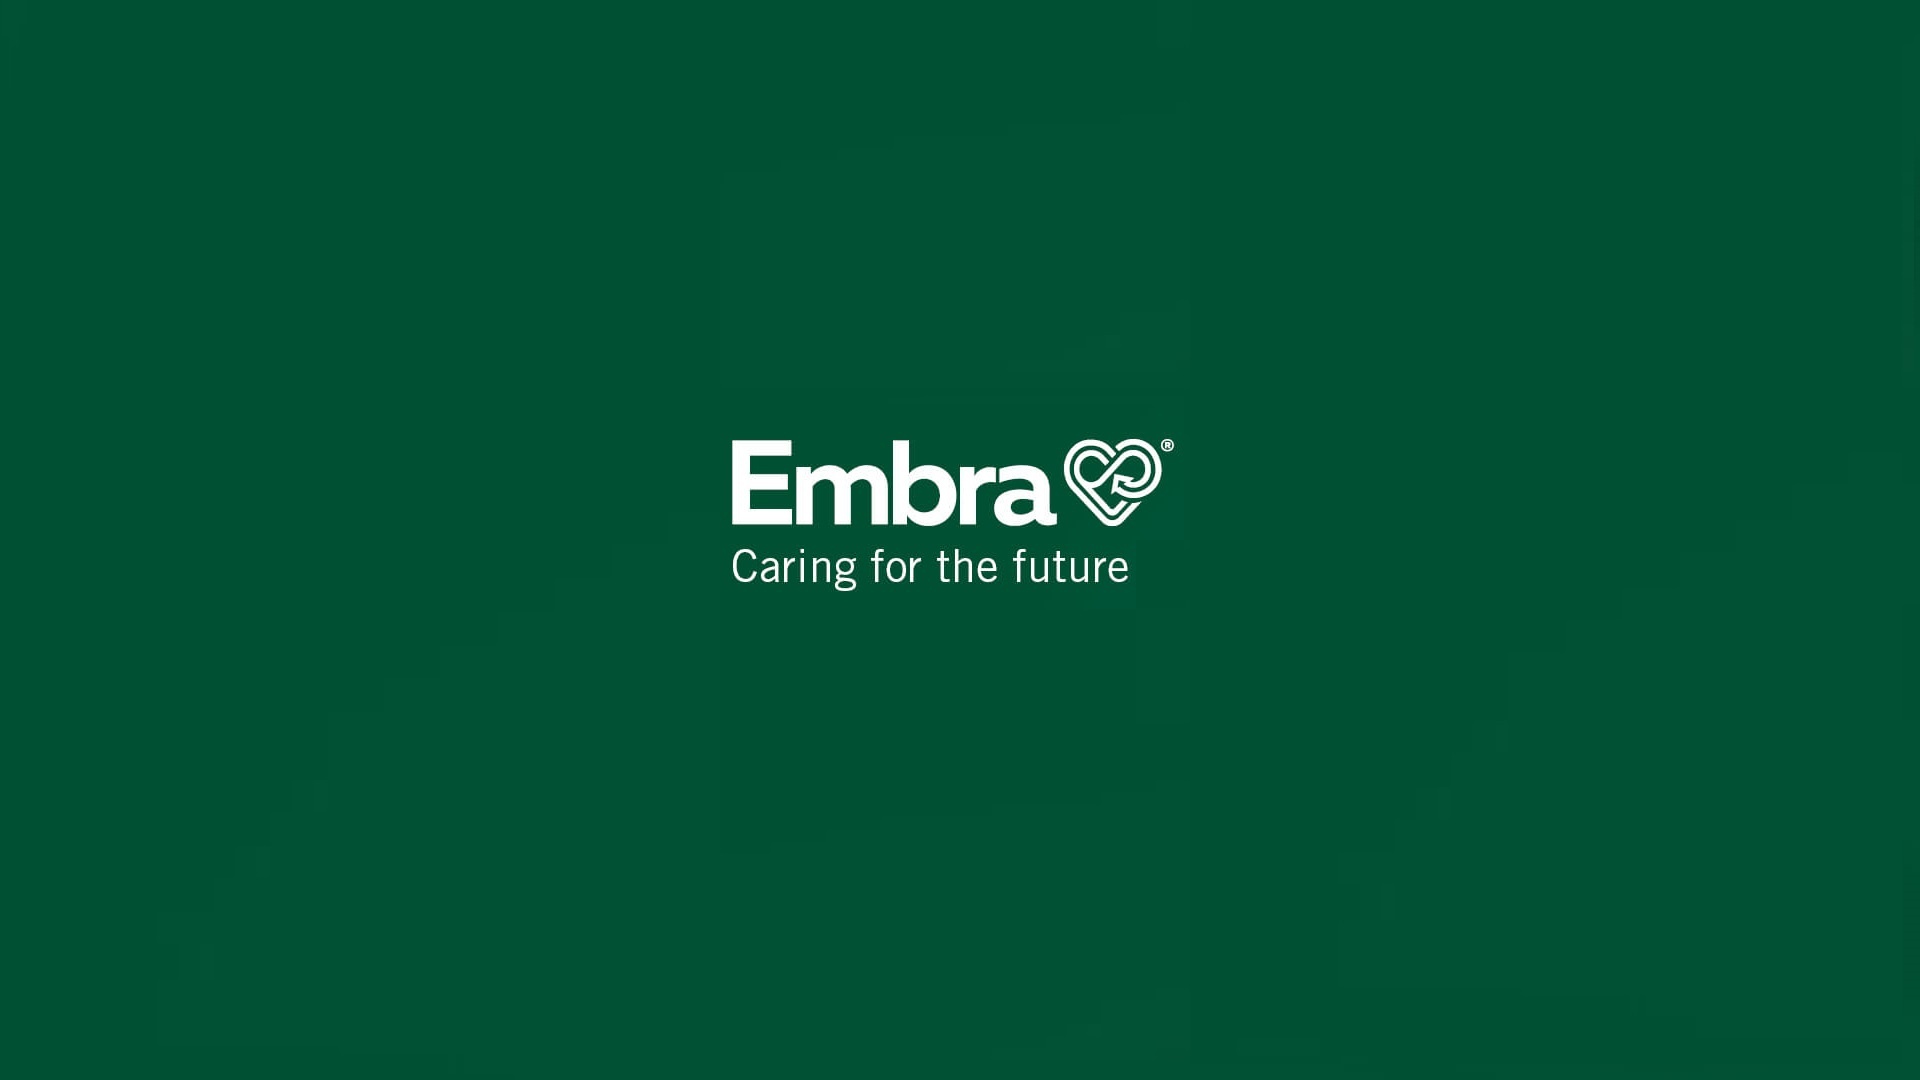 Duurzaamheid in de zorg: CortoClinics pioniert met Embra-producten 